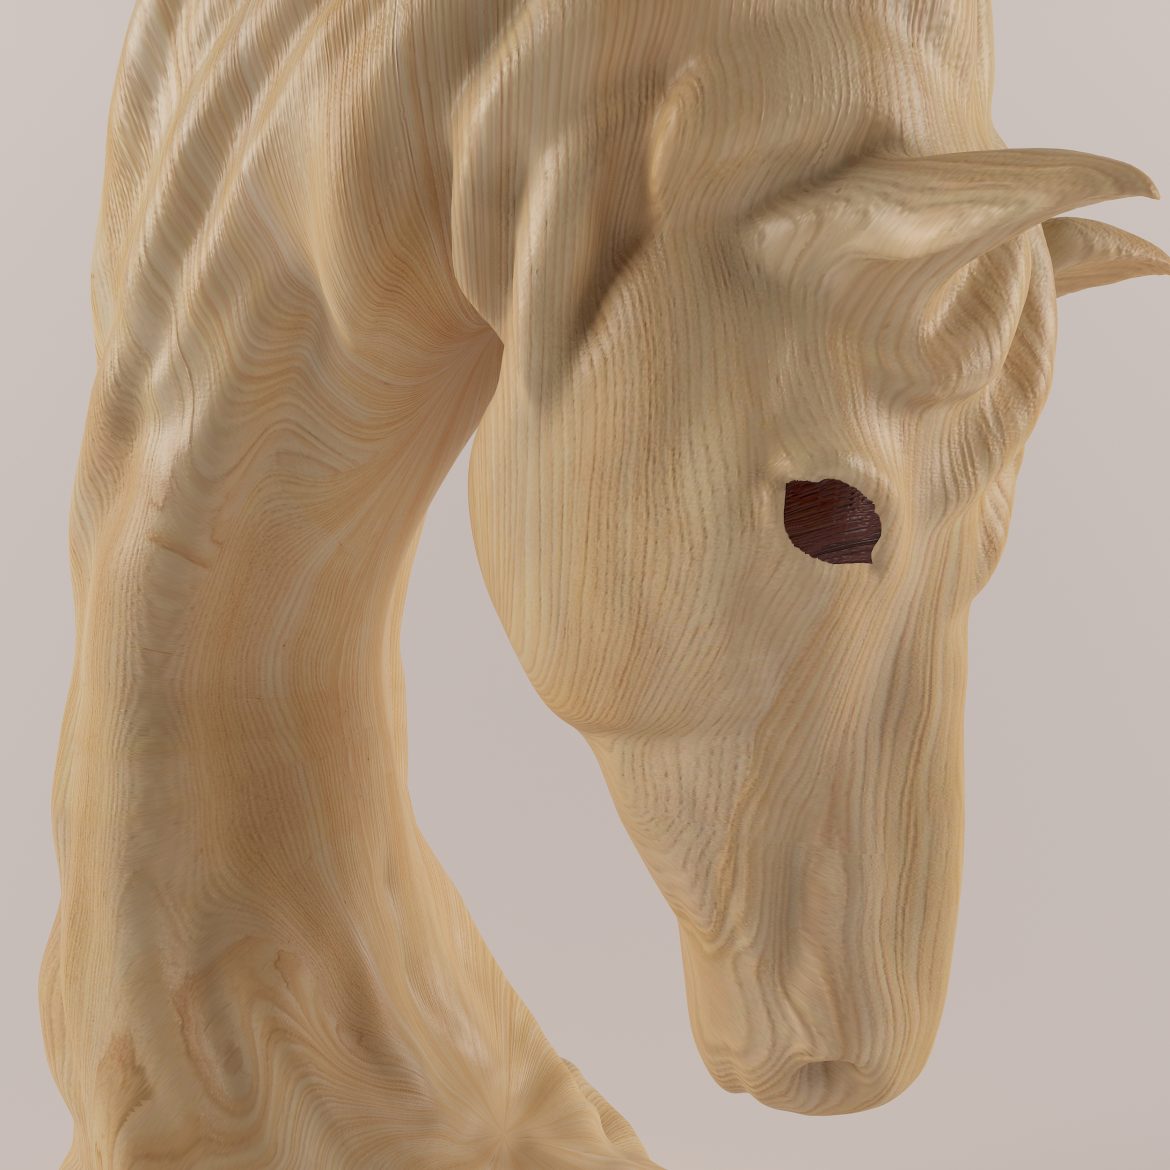 horse statue-402 3d model max obj 297500